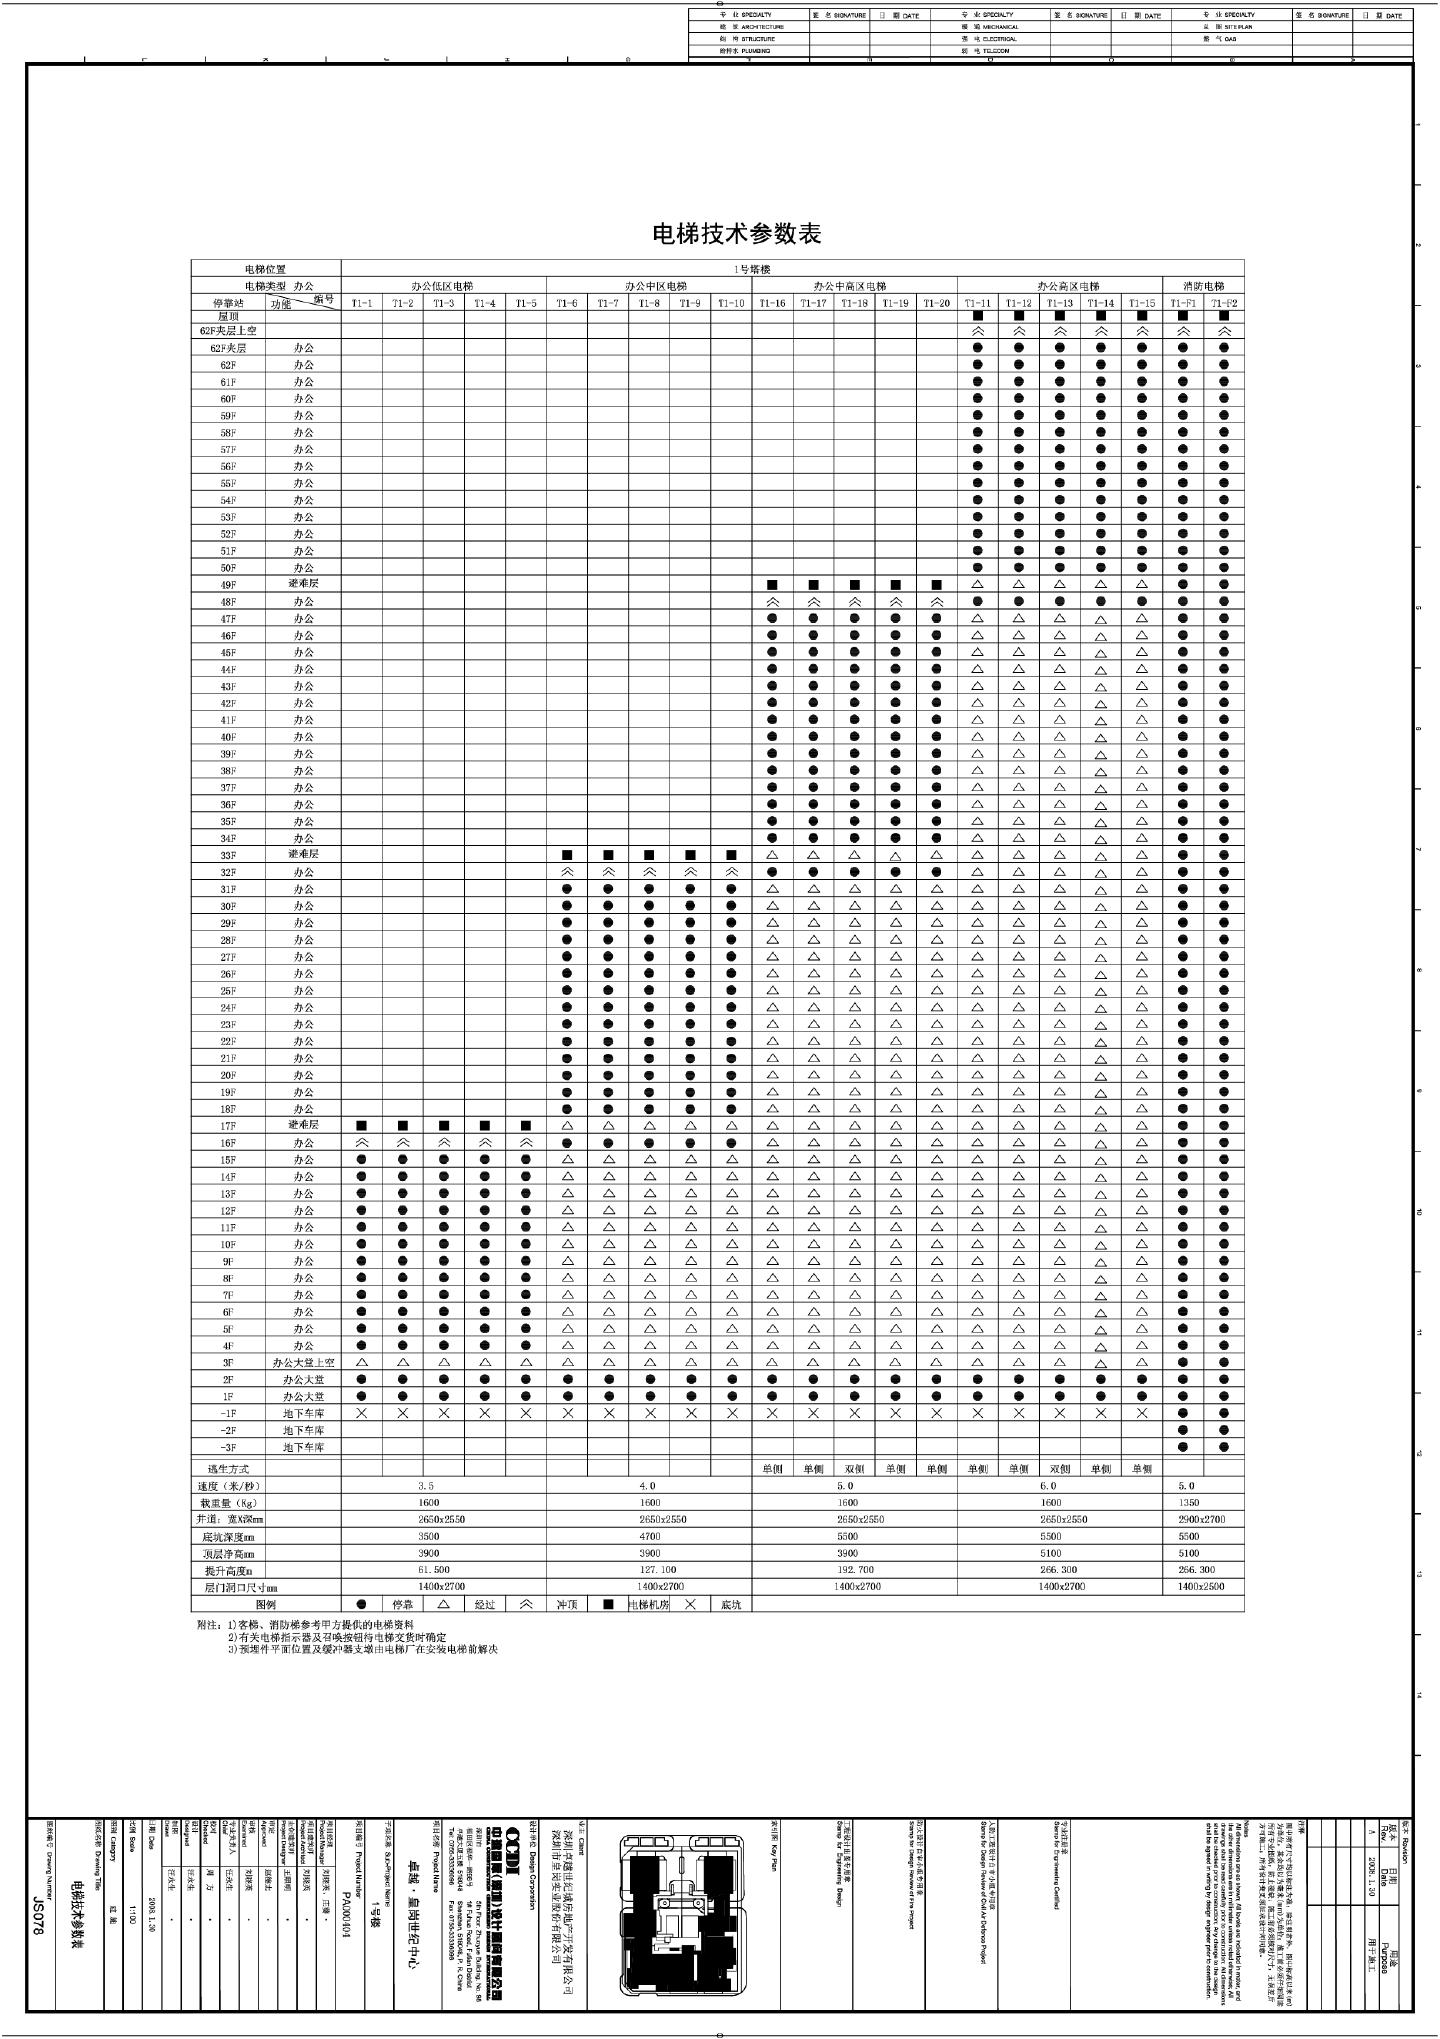 卓越·皇岗世纪中心1号楼建施078电梯技术参数表CAD图.dwg